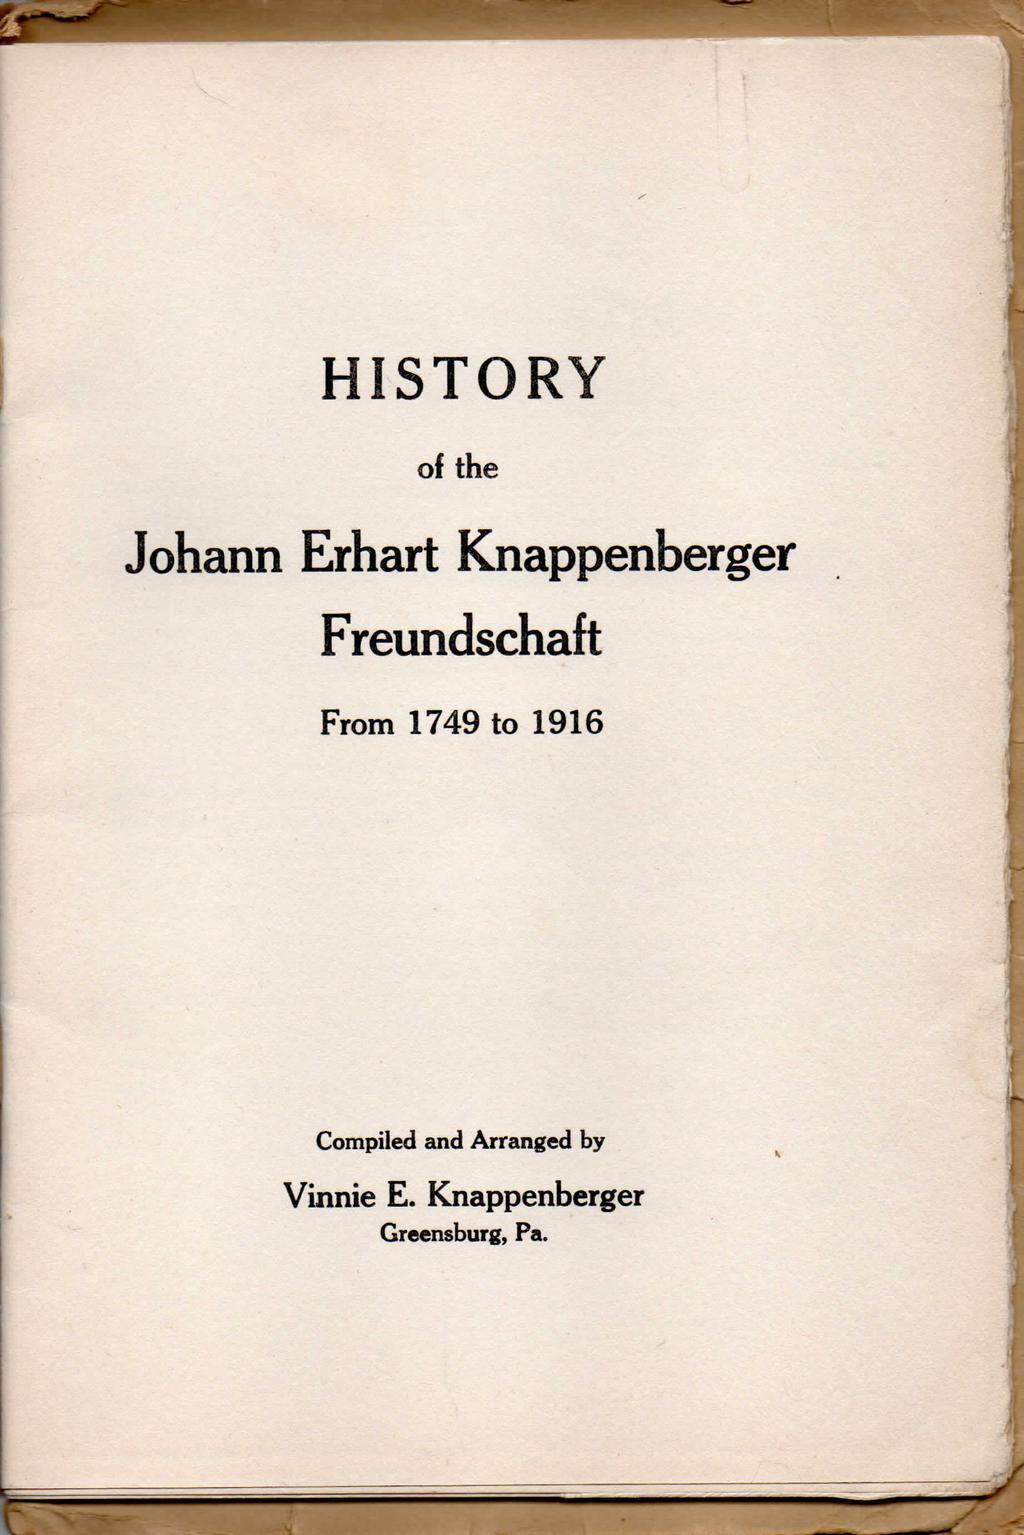 HISTORY of the Johann Erhart Knappenberger Freundschaft From 1749 to